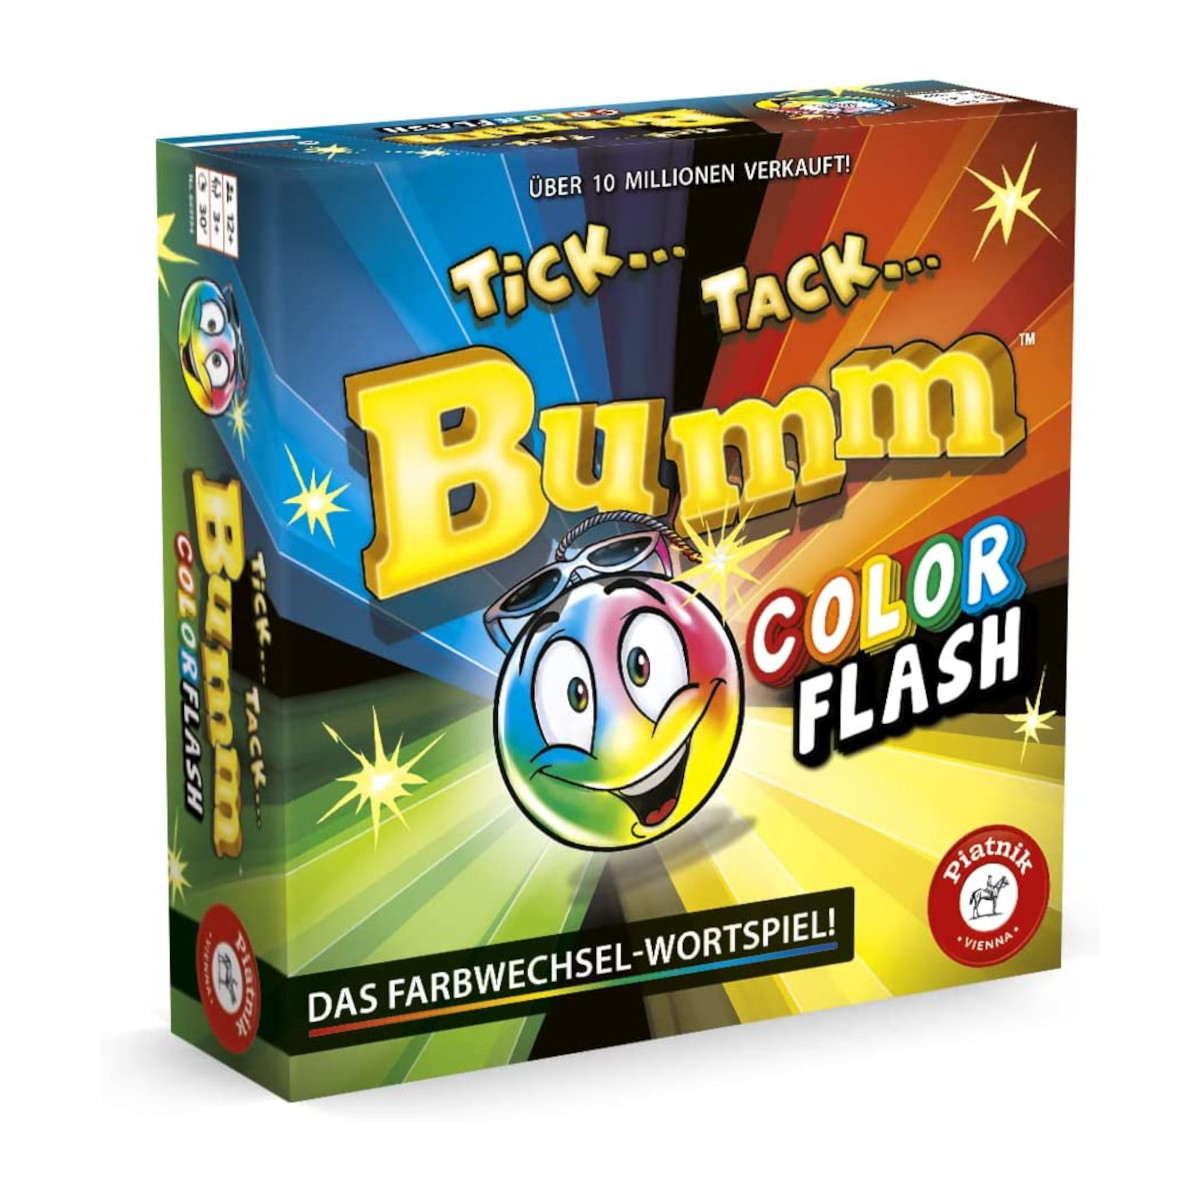 Color Flash Tack Bumm Brettspiel PIATNIK Tick -